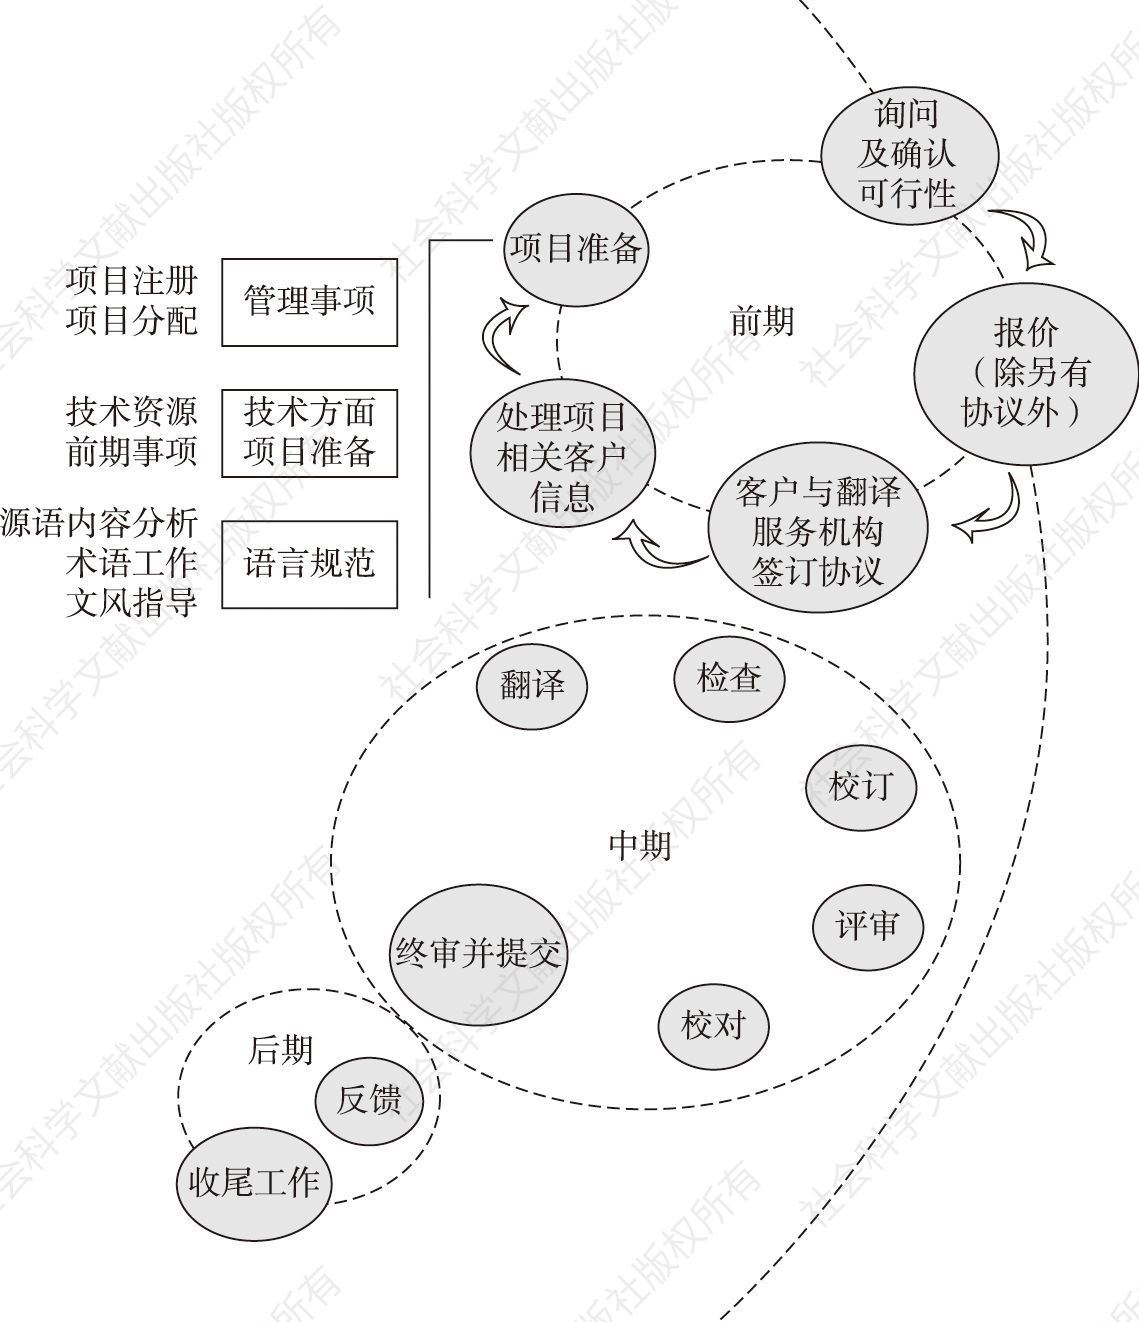 图3 ISO 17100国际翻译服务流程标准